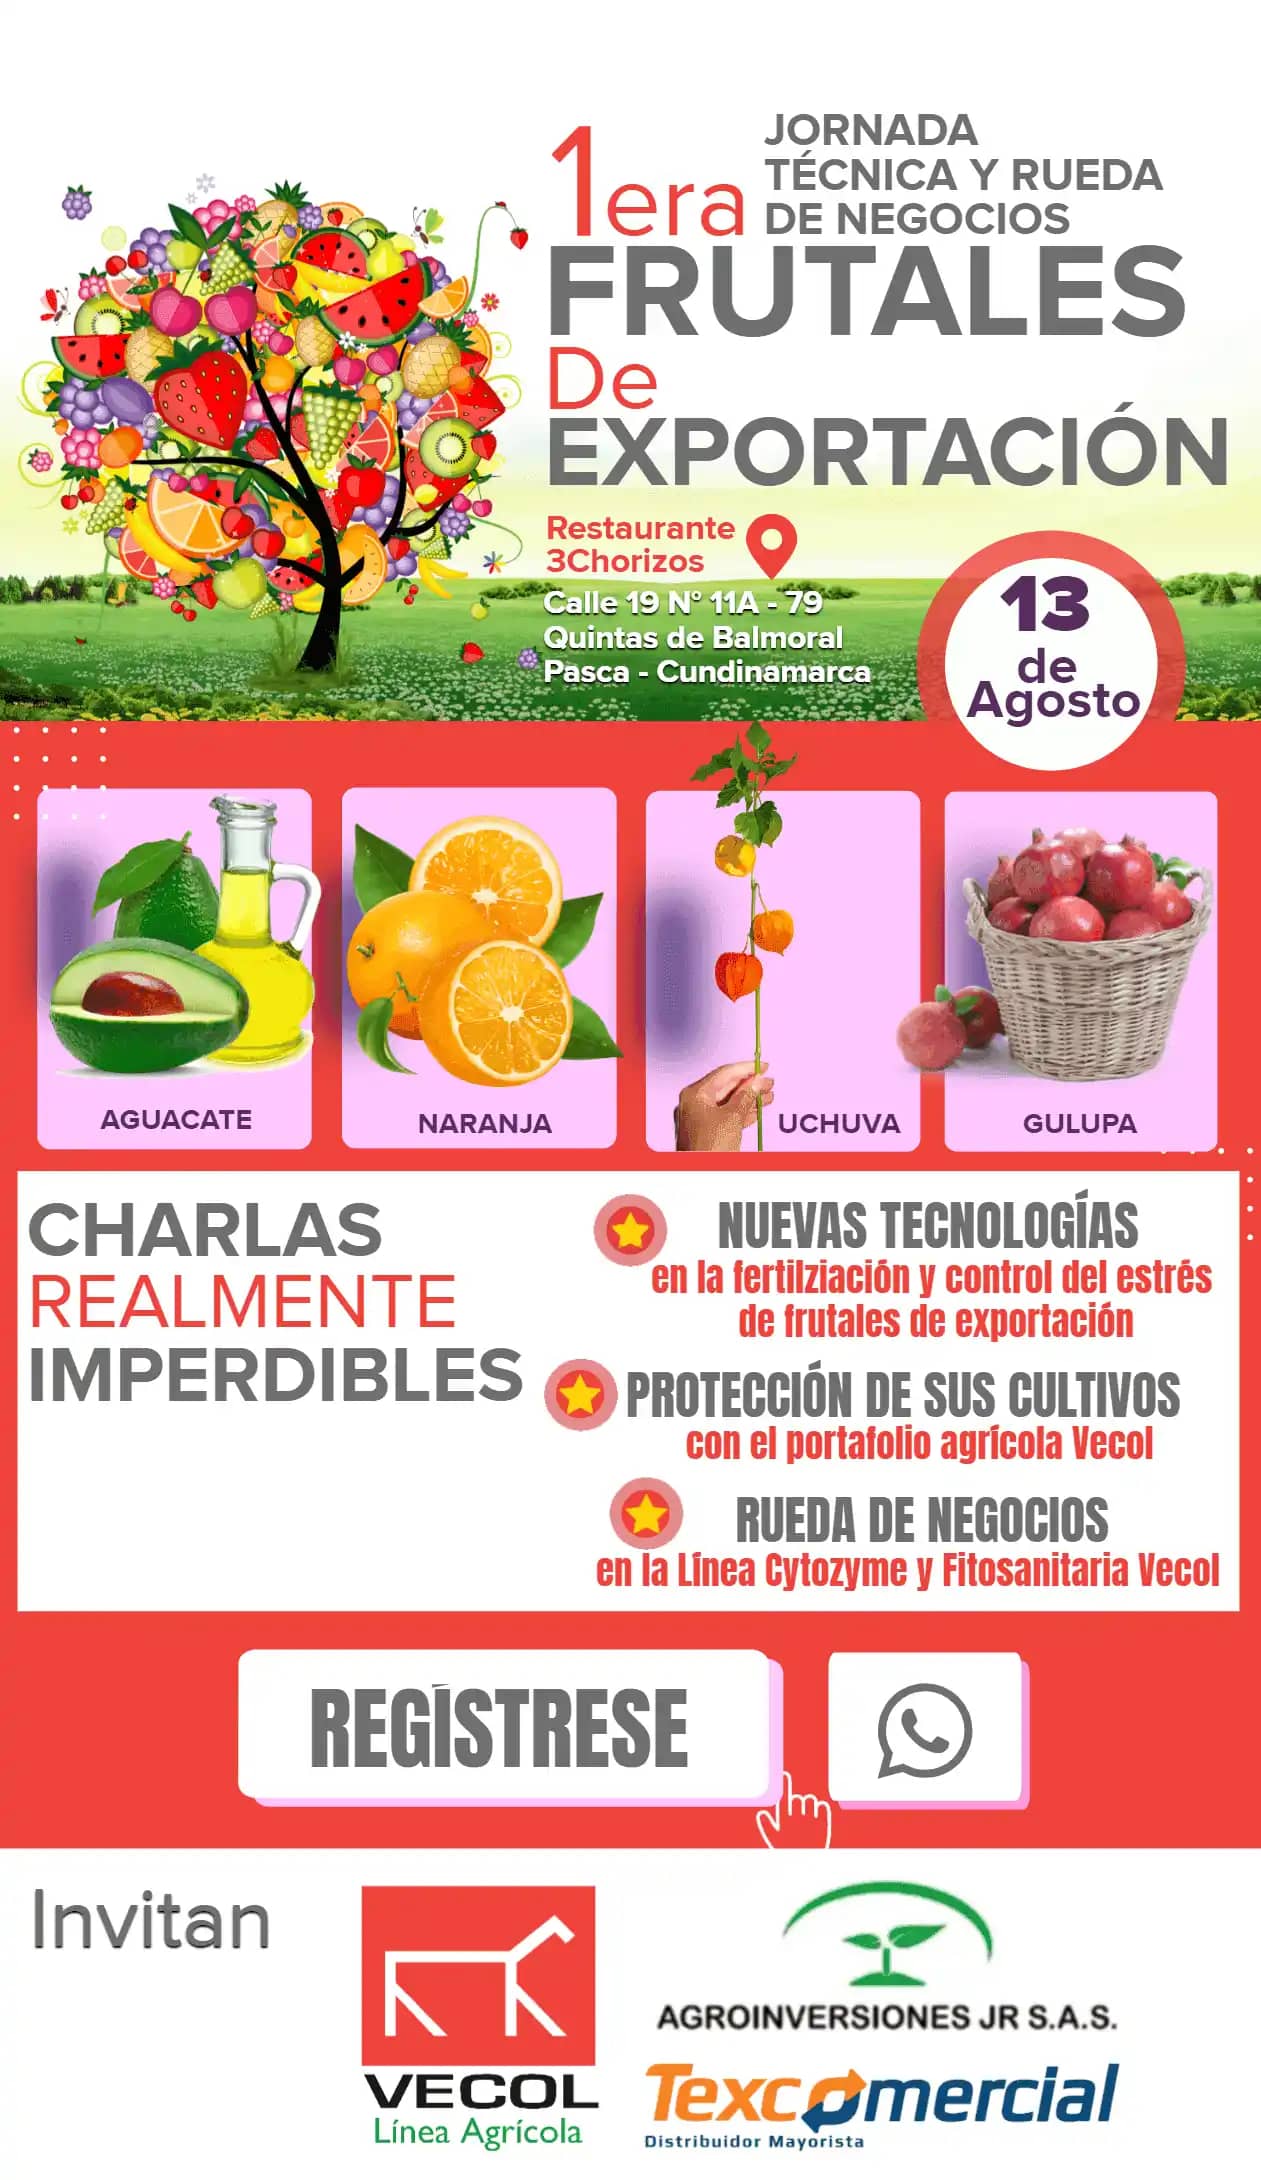 Arte Invitación Jornada Técnica y Rueda de Negocios Frutales de Exportación.png